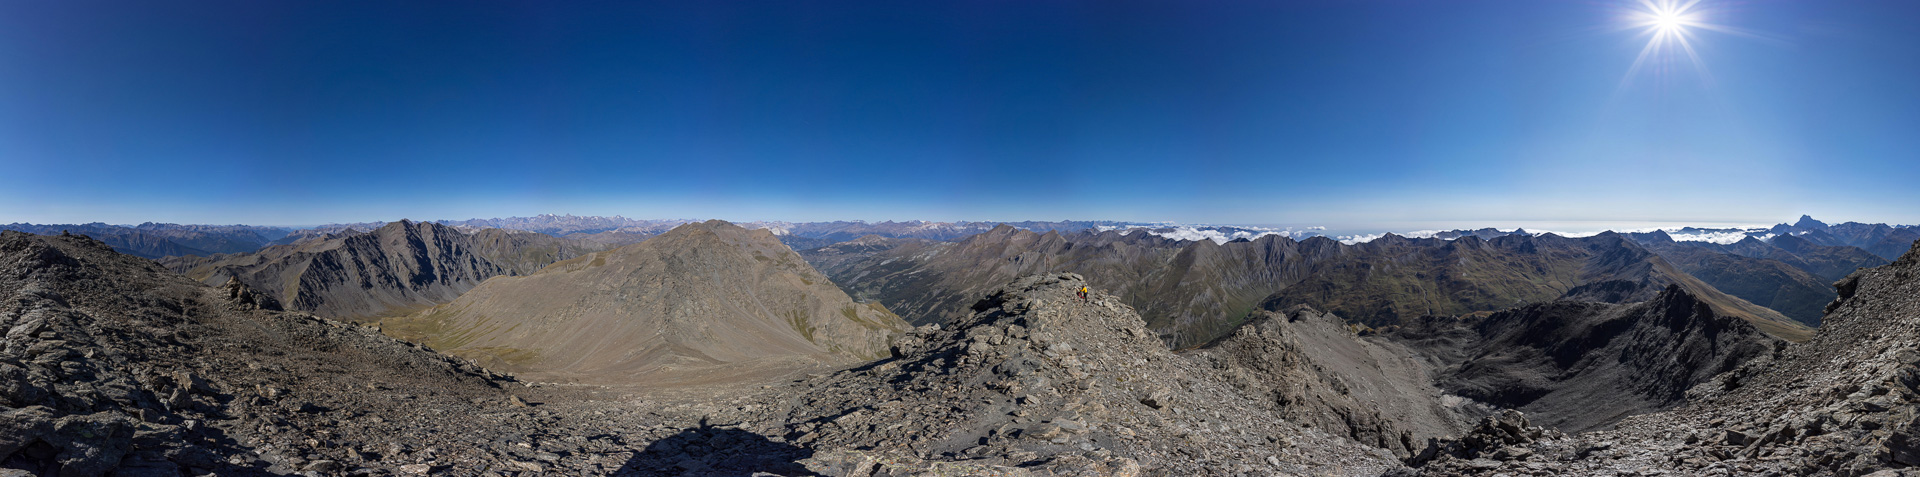 Gipfelpanorama von einem der besten Aussichtspunkte in den Südalpen.